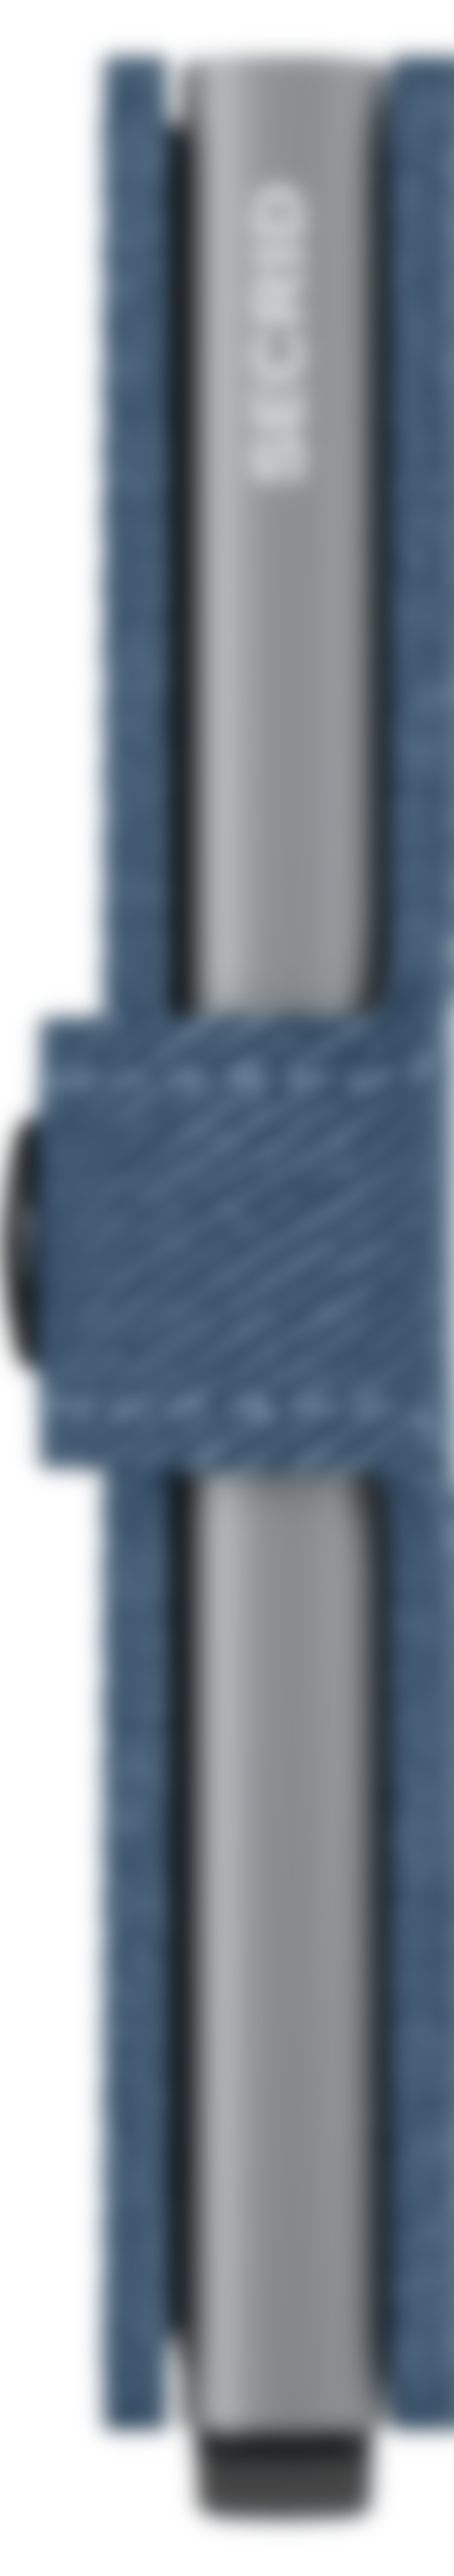 Secrid Mini Jeans Blue Twist Wallet 